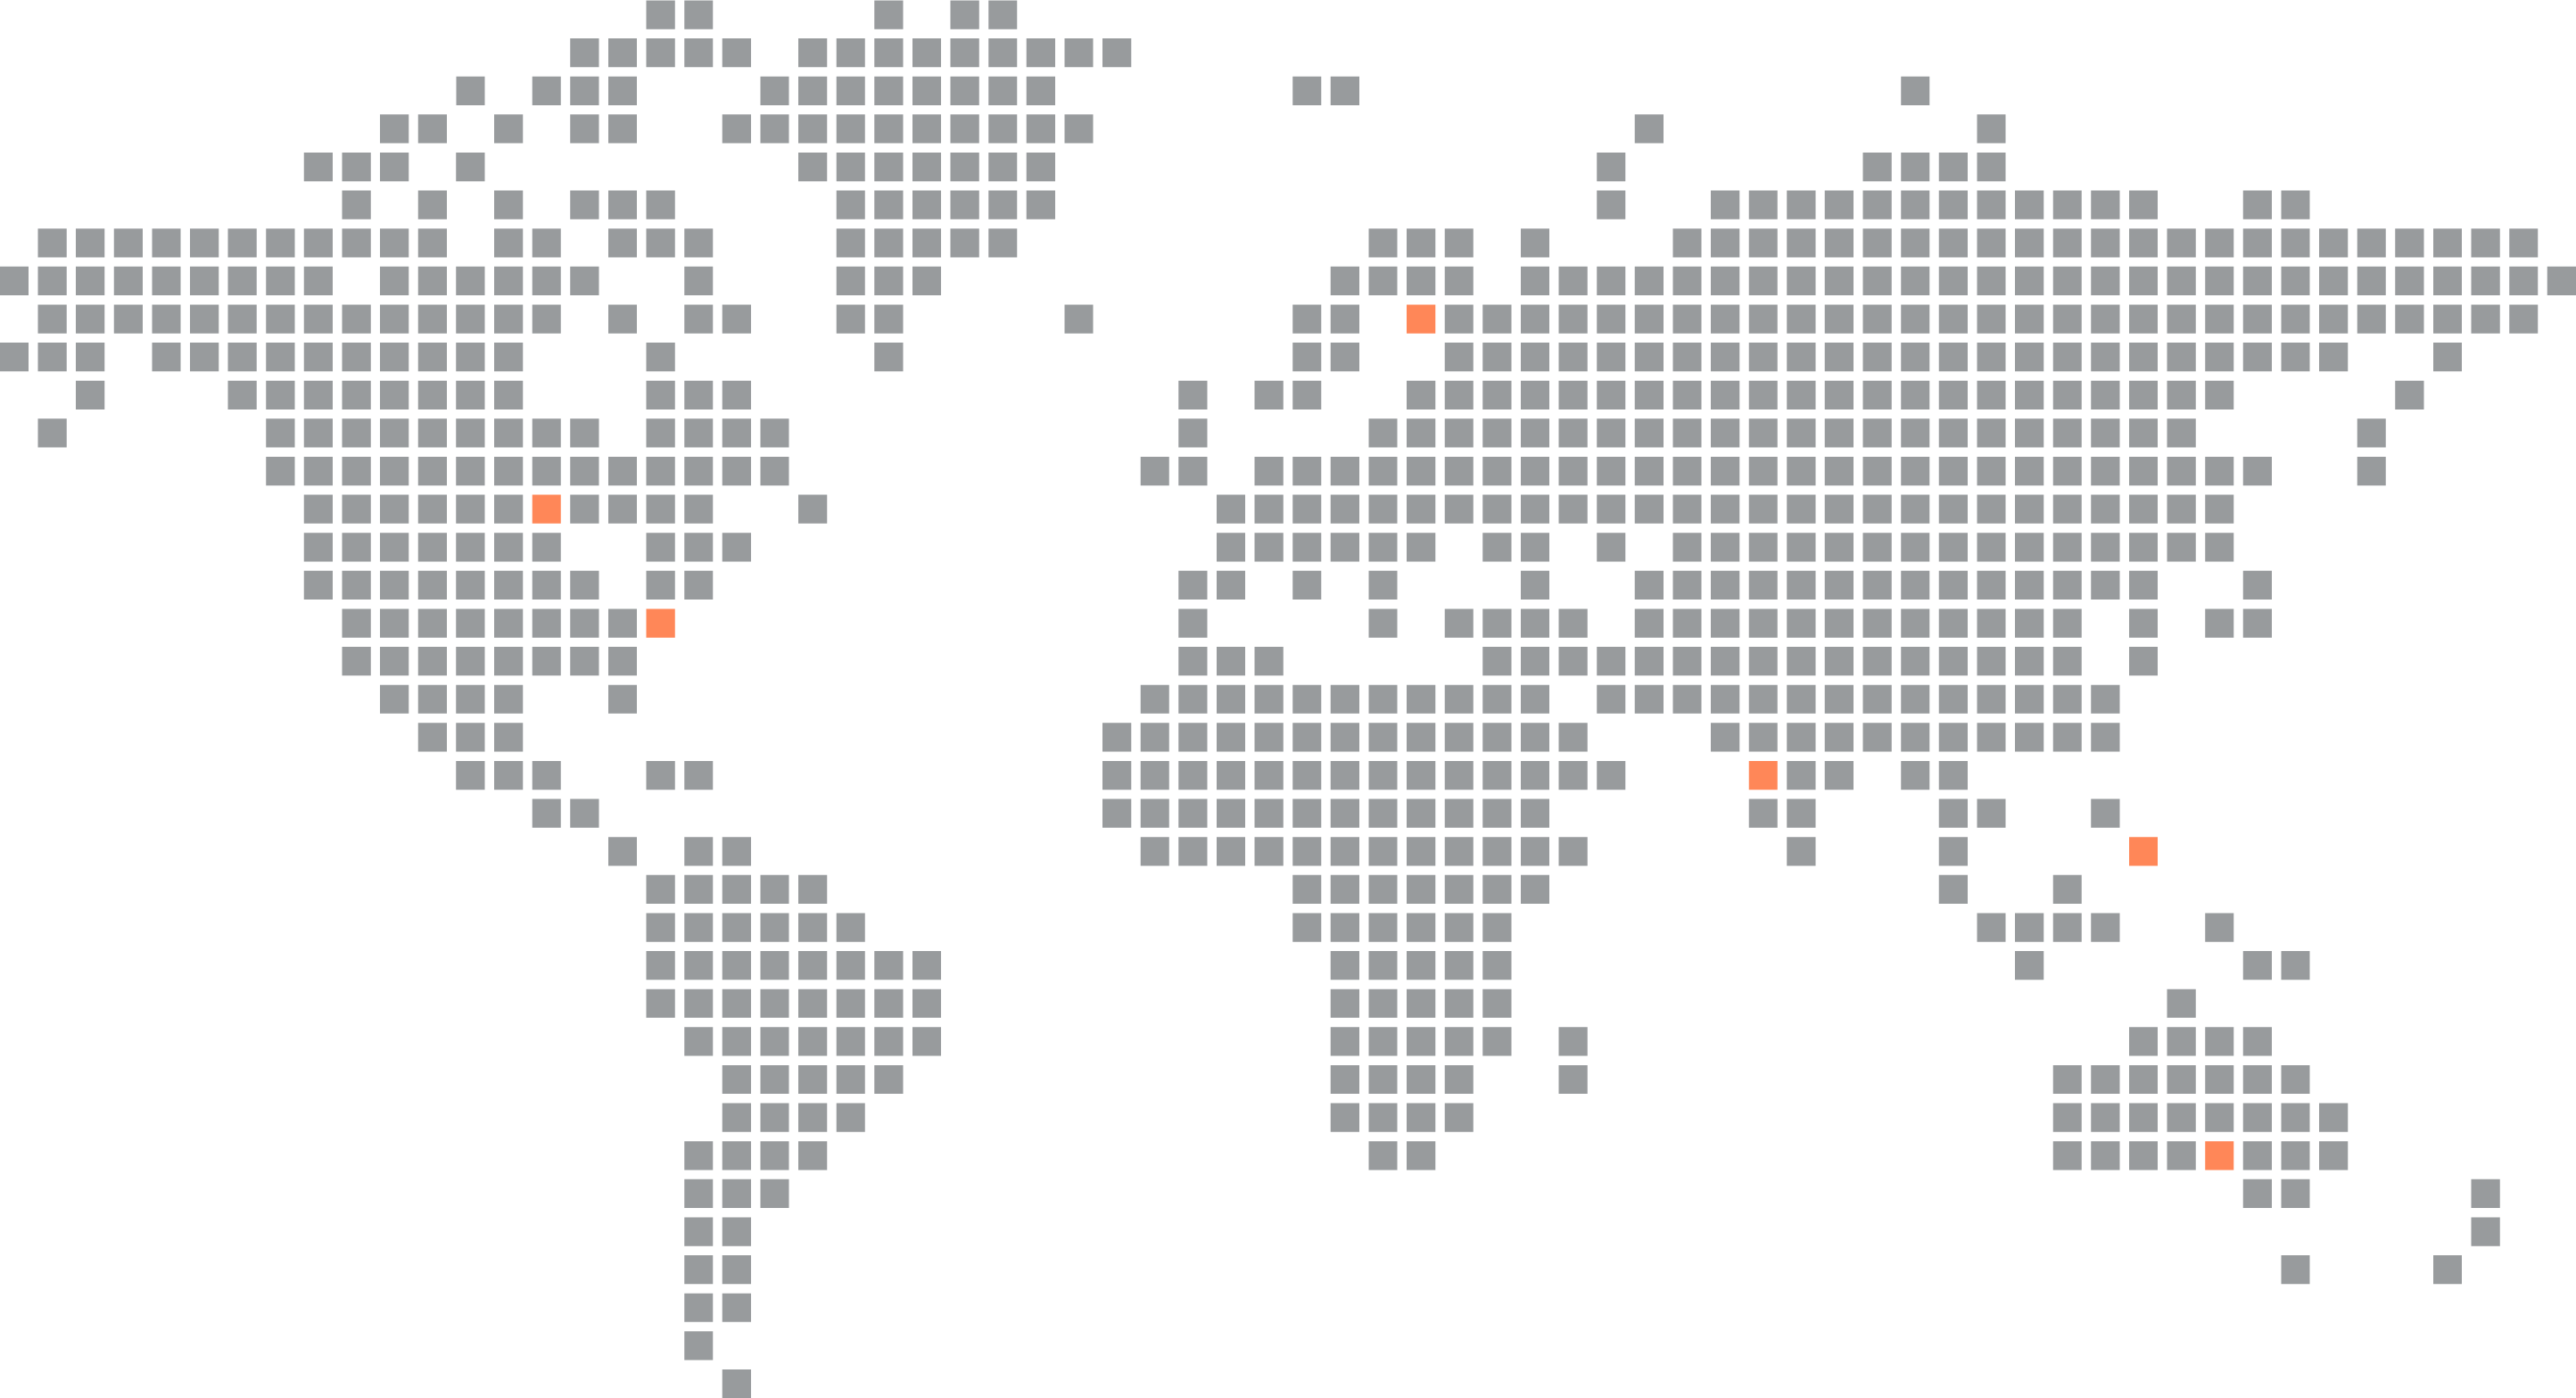 Language map